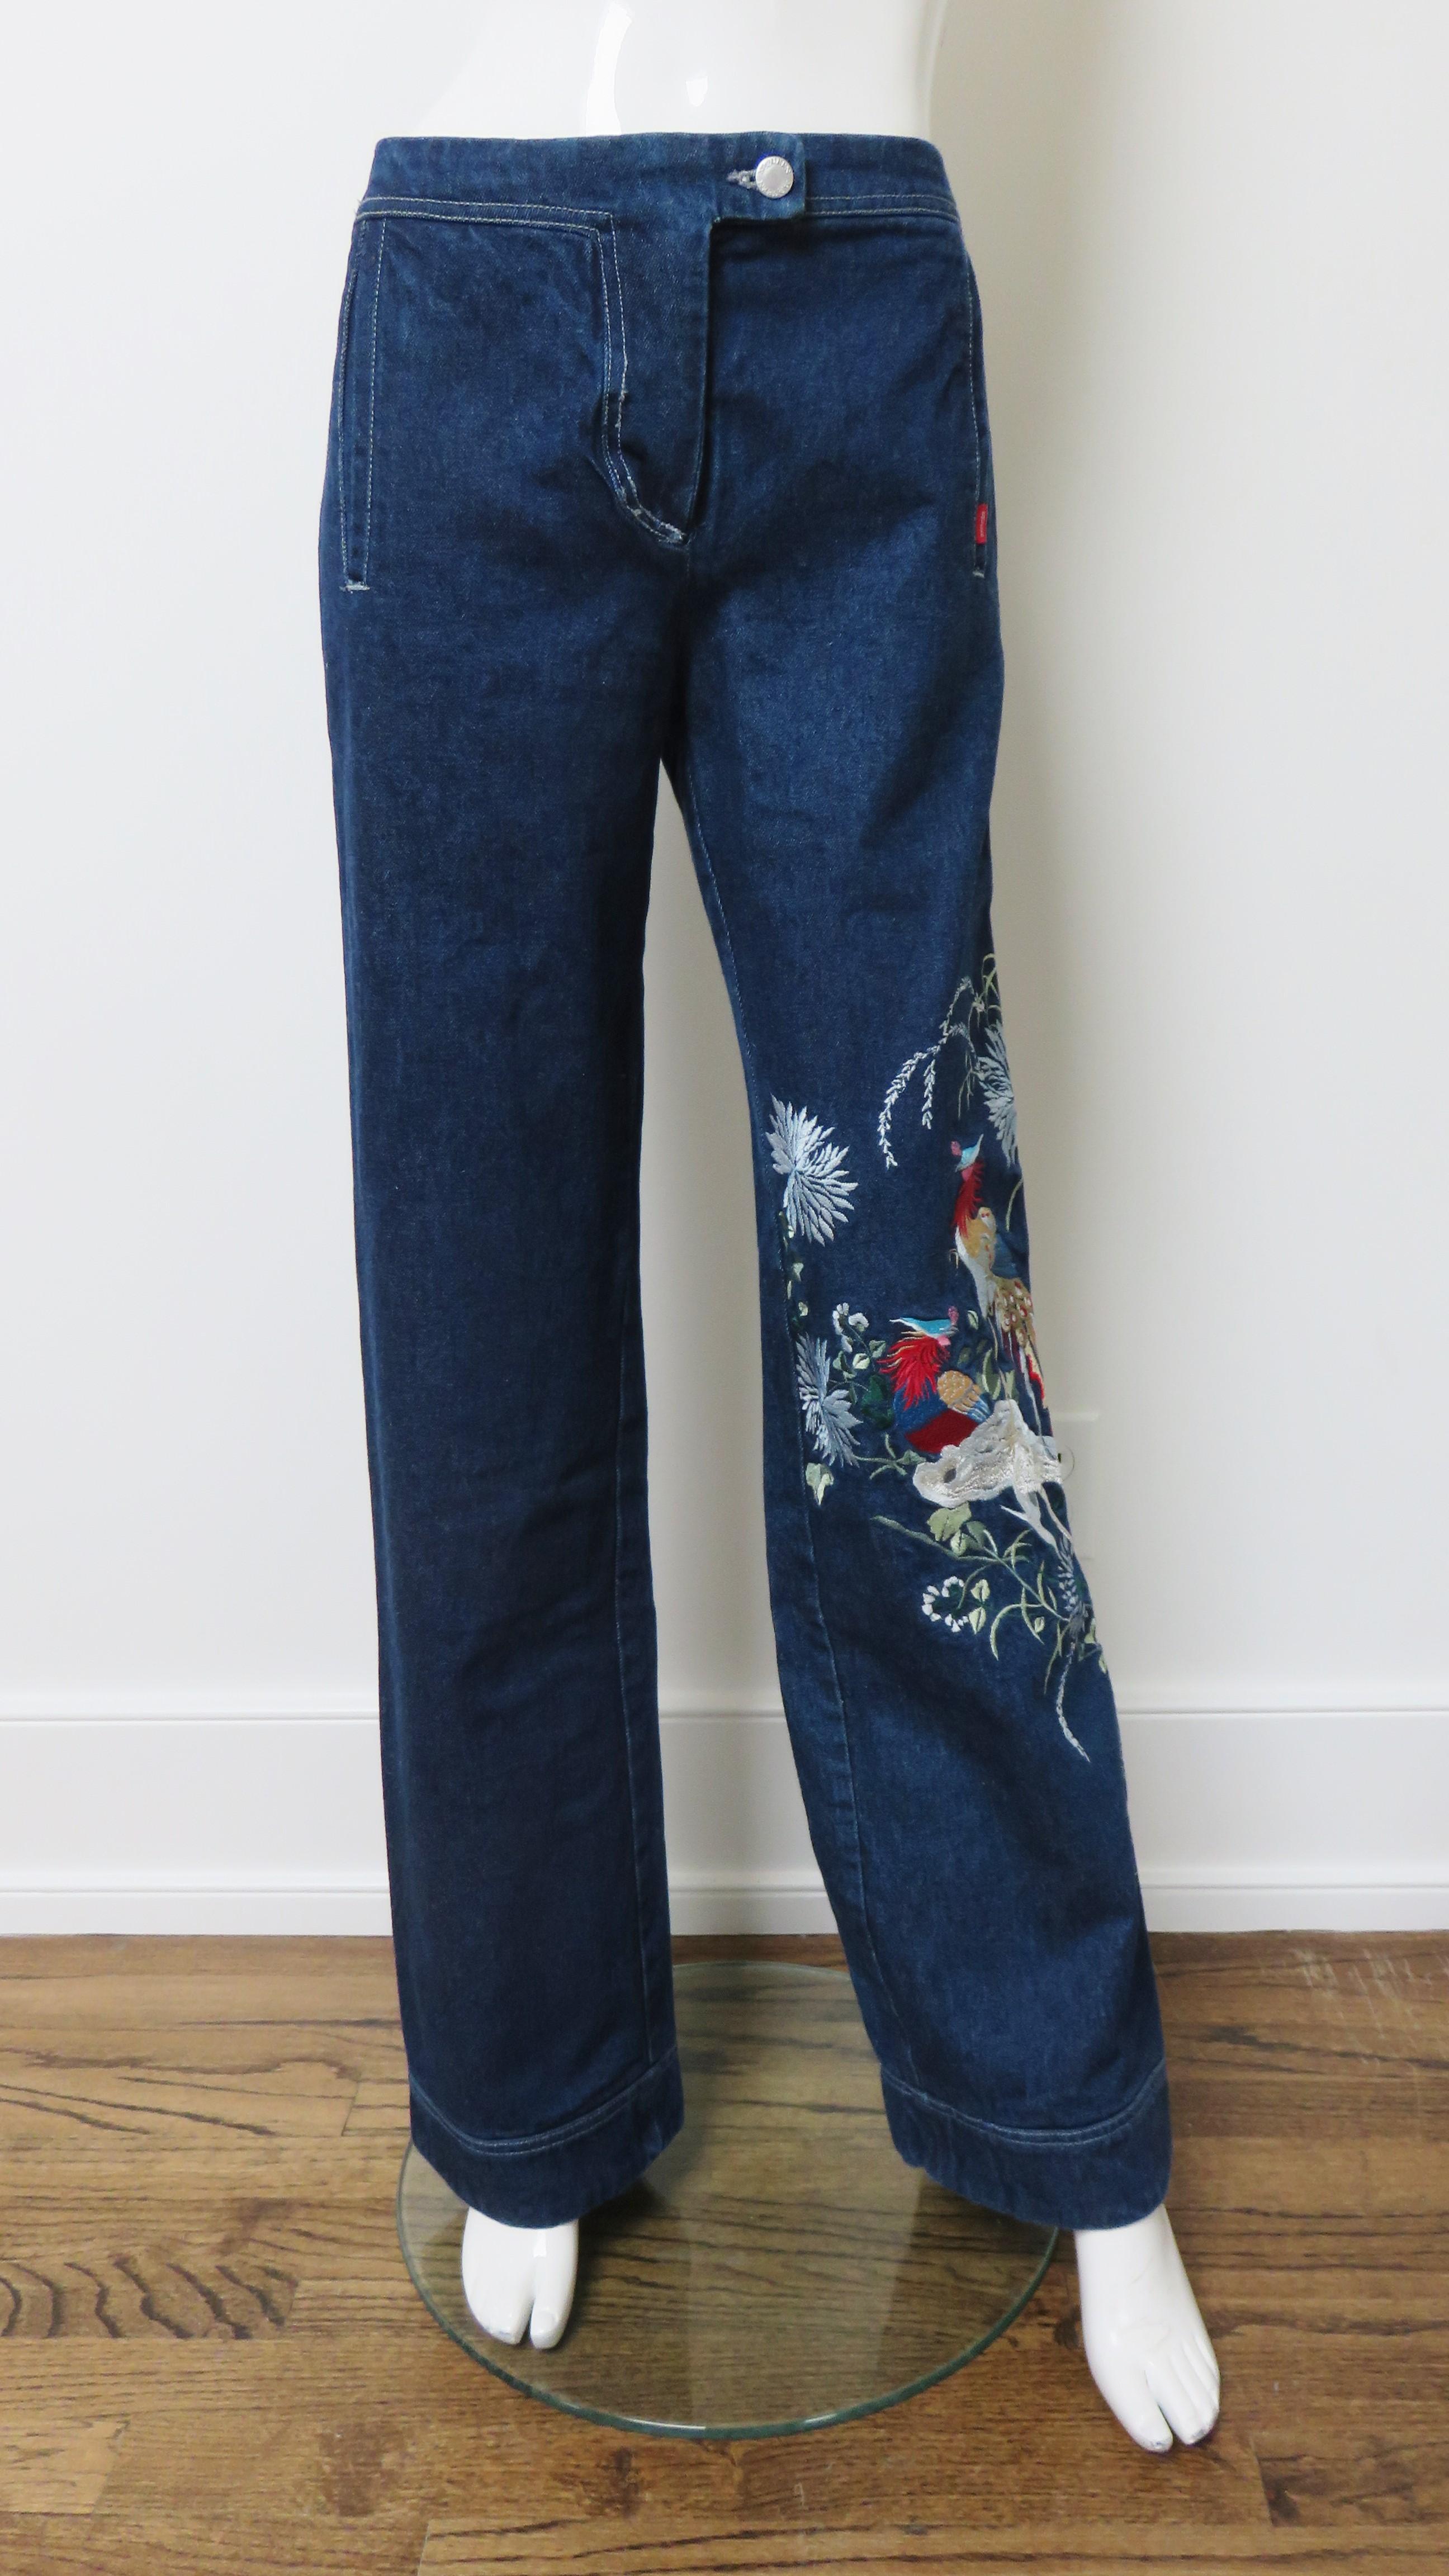 Incroyable blue-jean brodé par Alexander McQueen, issu de l'une de ses premières collections notables.  Ils sont de taille moyenne, avec des jambes droites et de fabuleux oiseaux brodés en couleurs, aux détails complexes, le long d'une jambe, de la